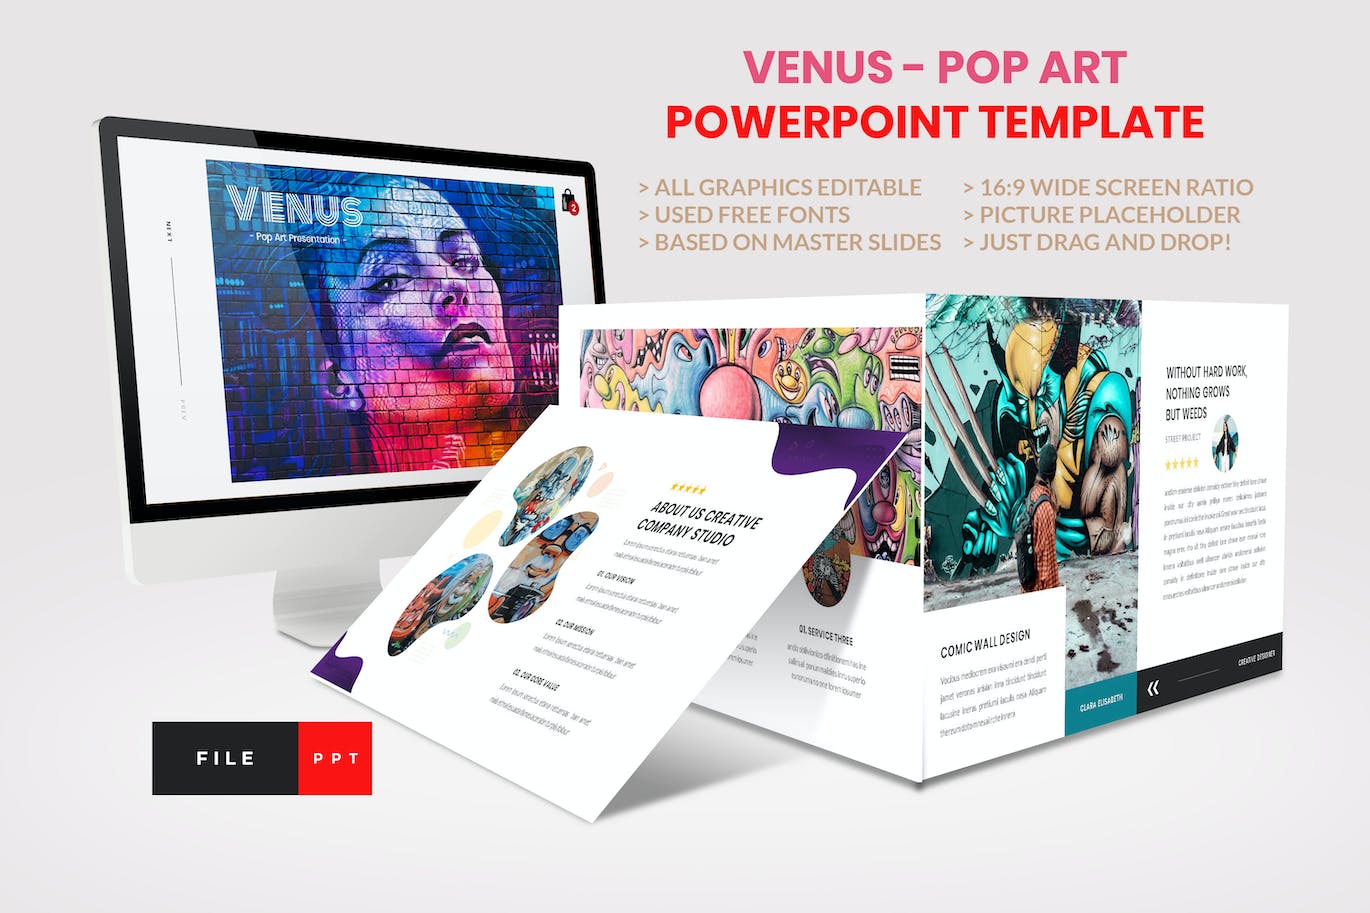 波普艺术创意PPT演示幻灯片模板 Pop Art – Creative PowerPoint Template 幻灯图表 第1张